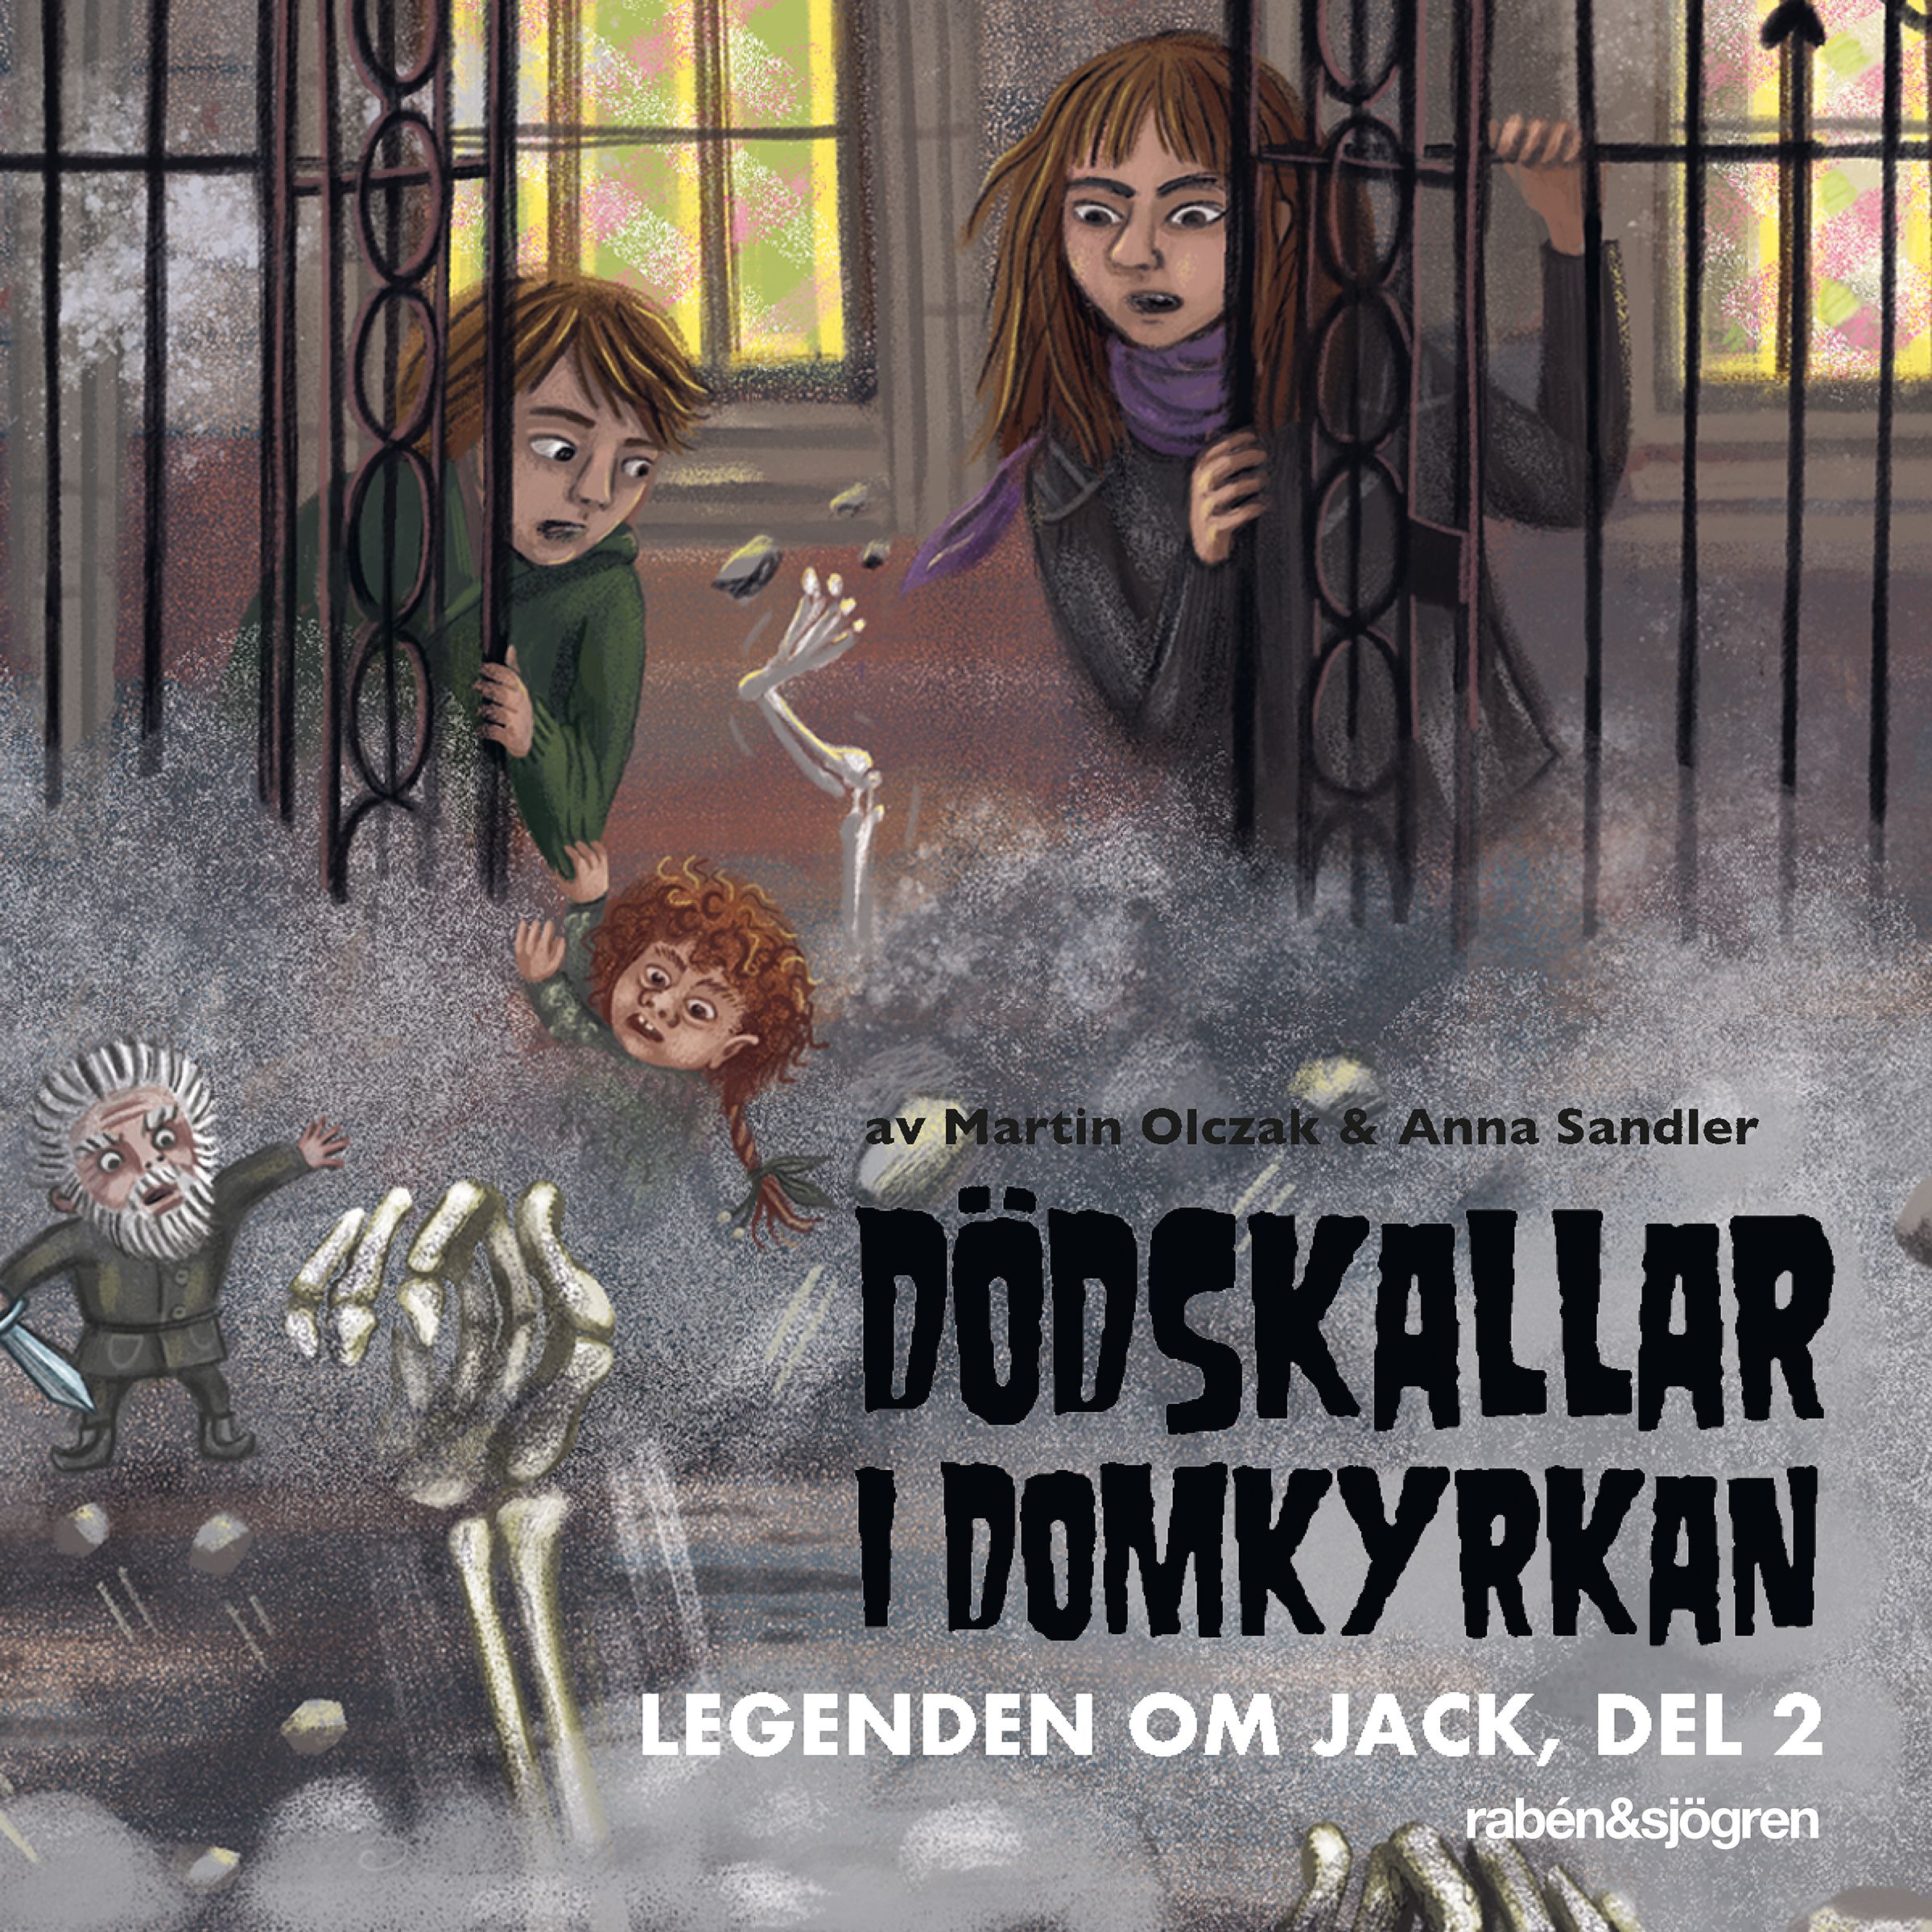 Dödskallar i domkyrkan, audiobook by Martin Olczak